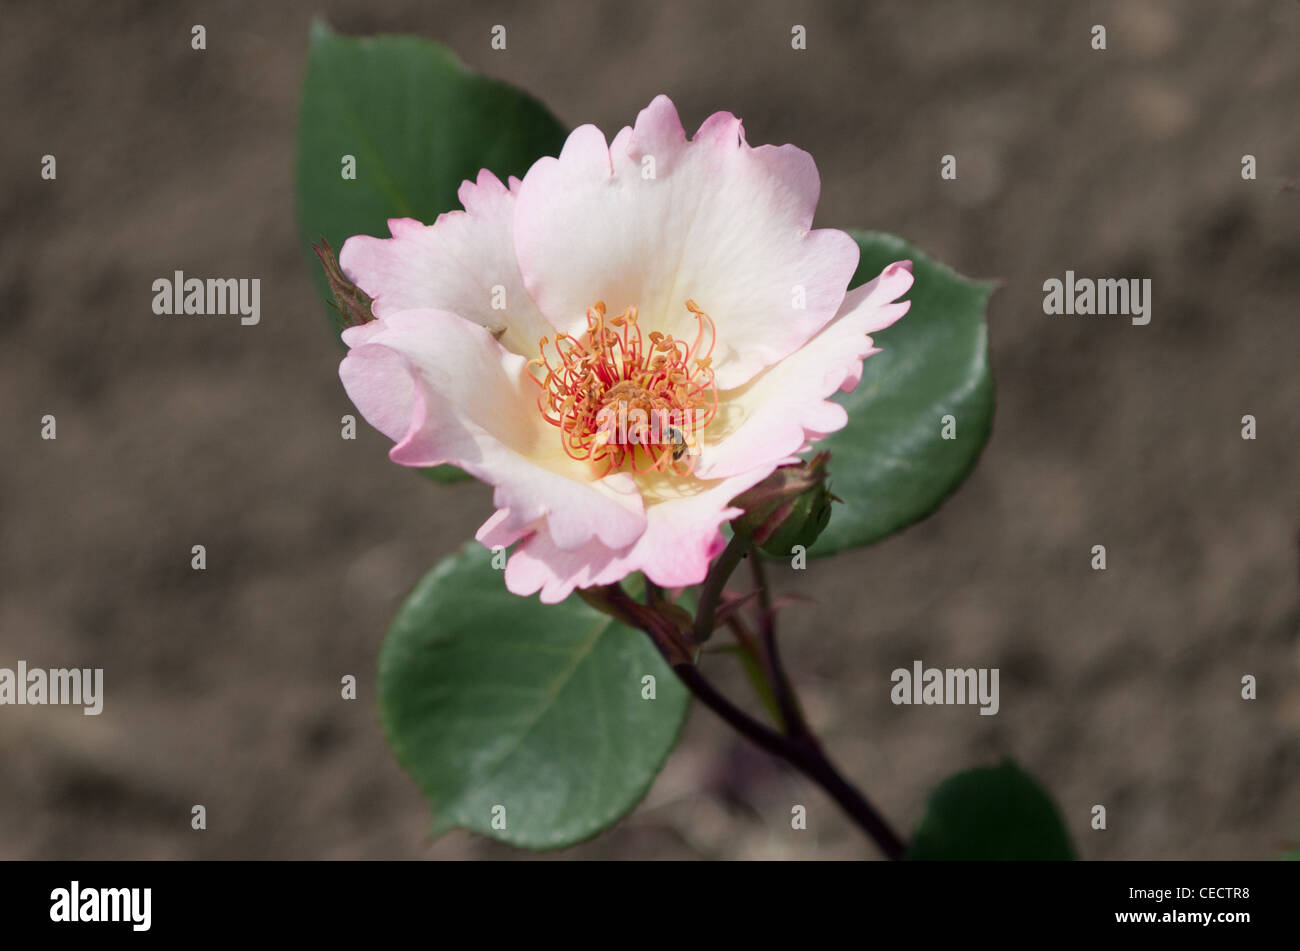 Ellen rosa immagini e fotografie stock ad alta risoluzione - Alamy